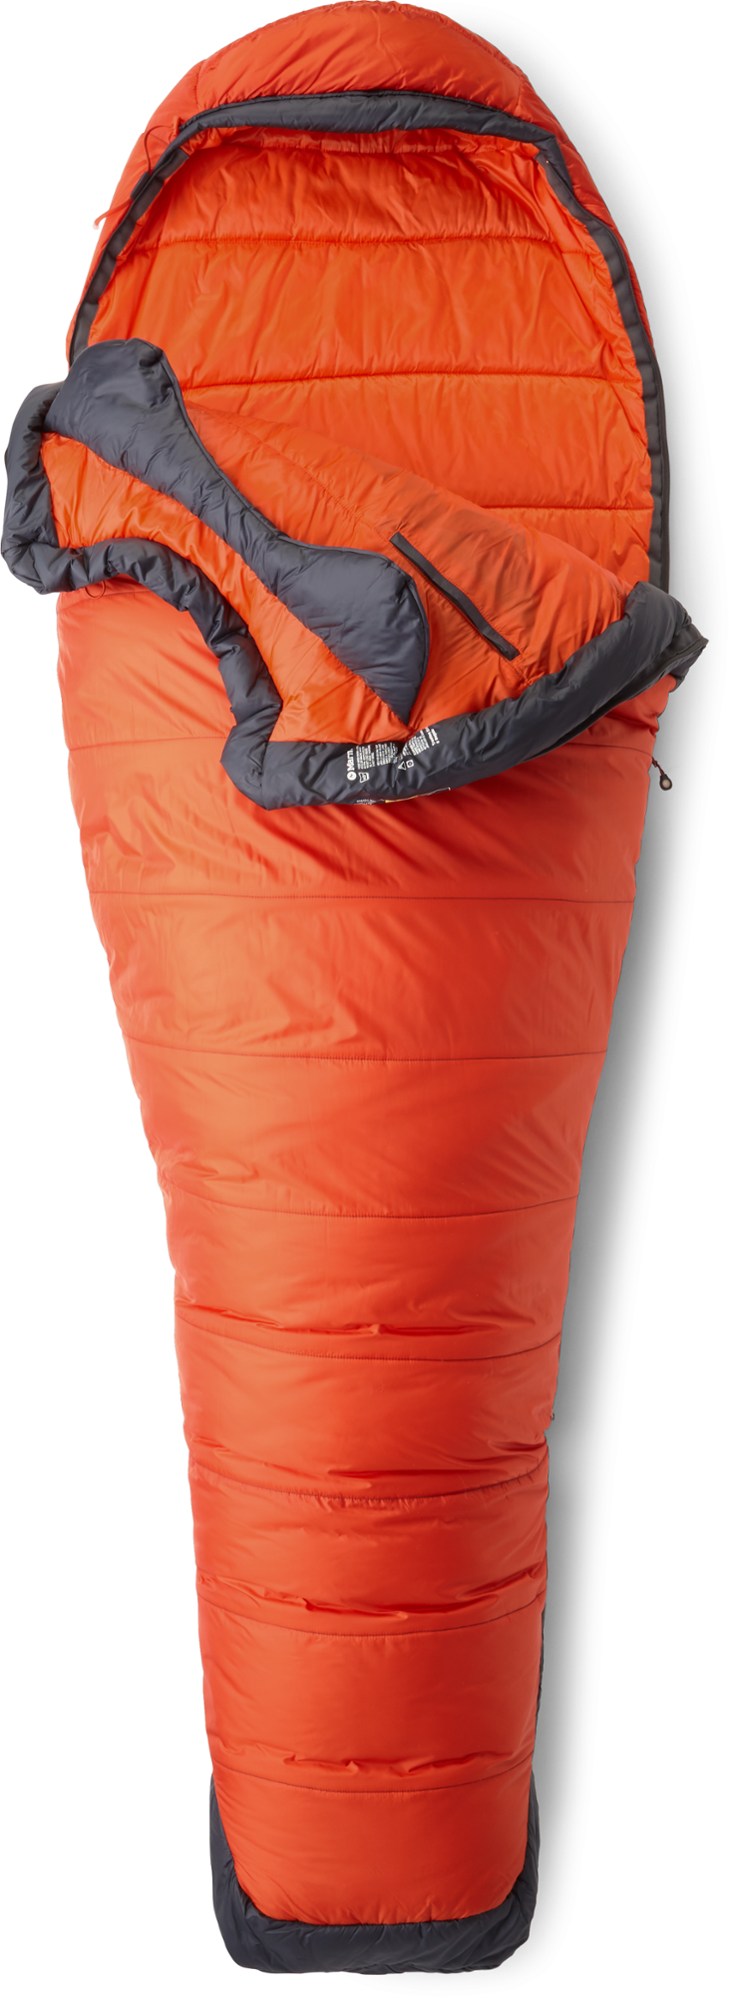 цена Спальный мешок Trestles Elite Eco 0 Marmot, оранжевый